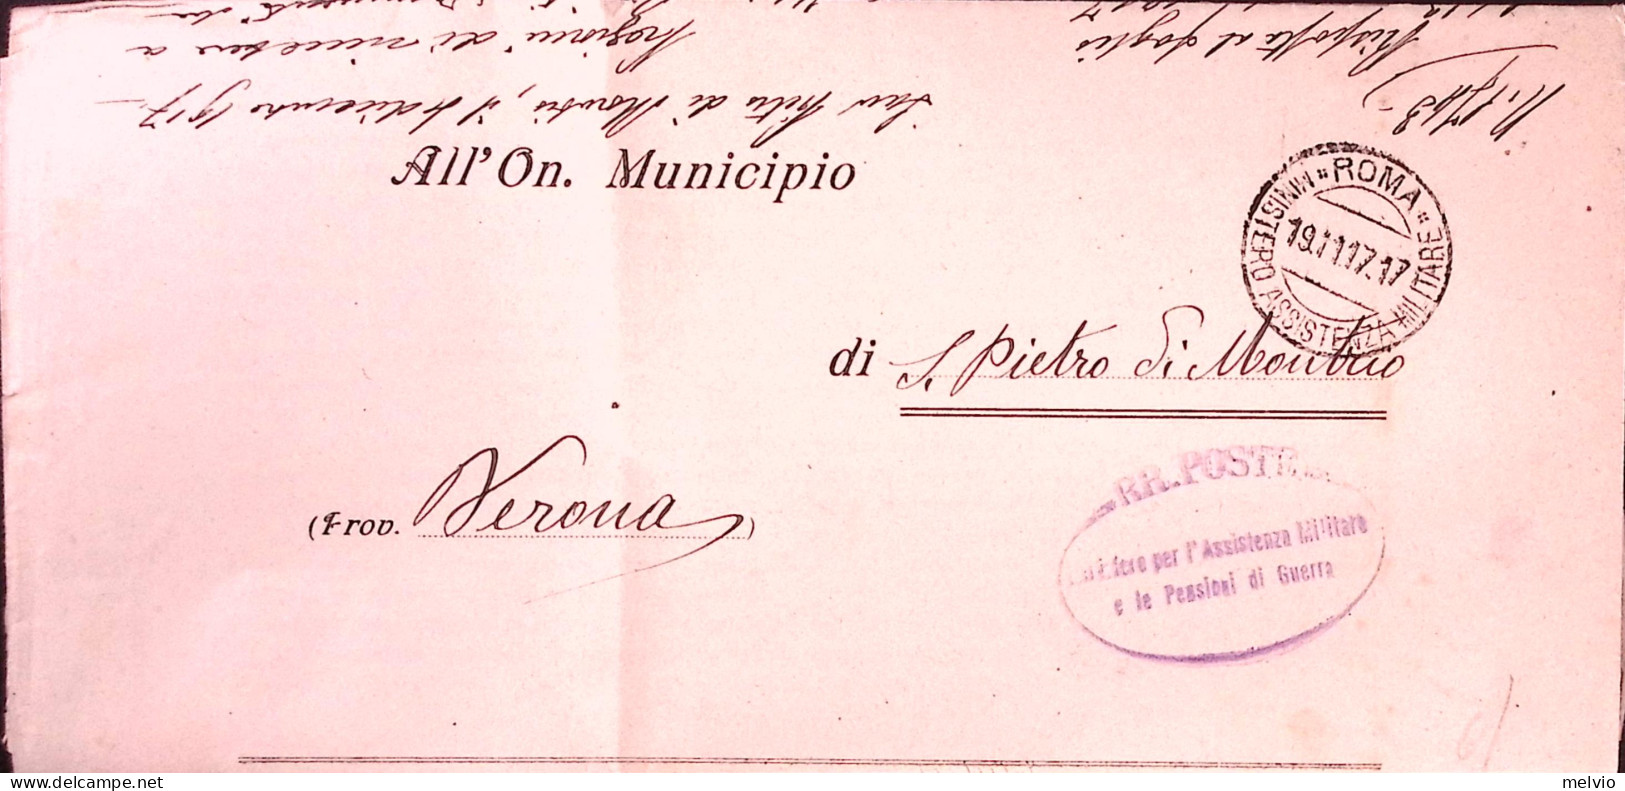 1917-ROMA/MIINISTERO ASSISTENZA MILITARE C.2 (19.11.17) Su Piego - Documenti